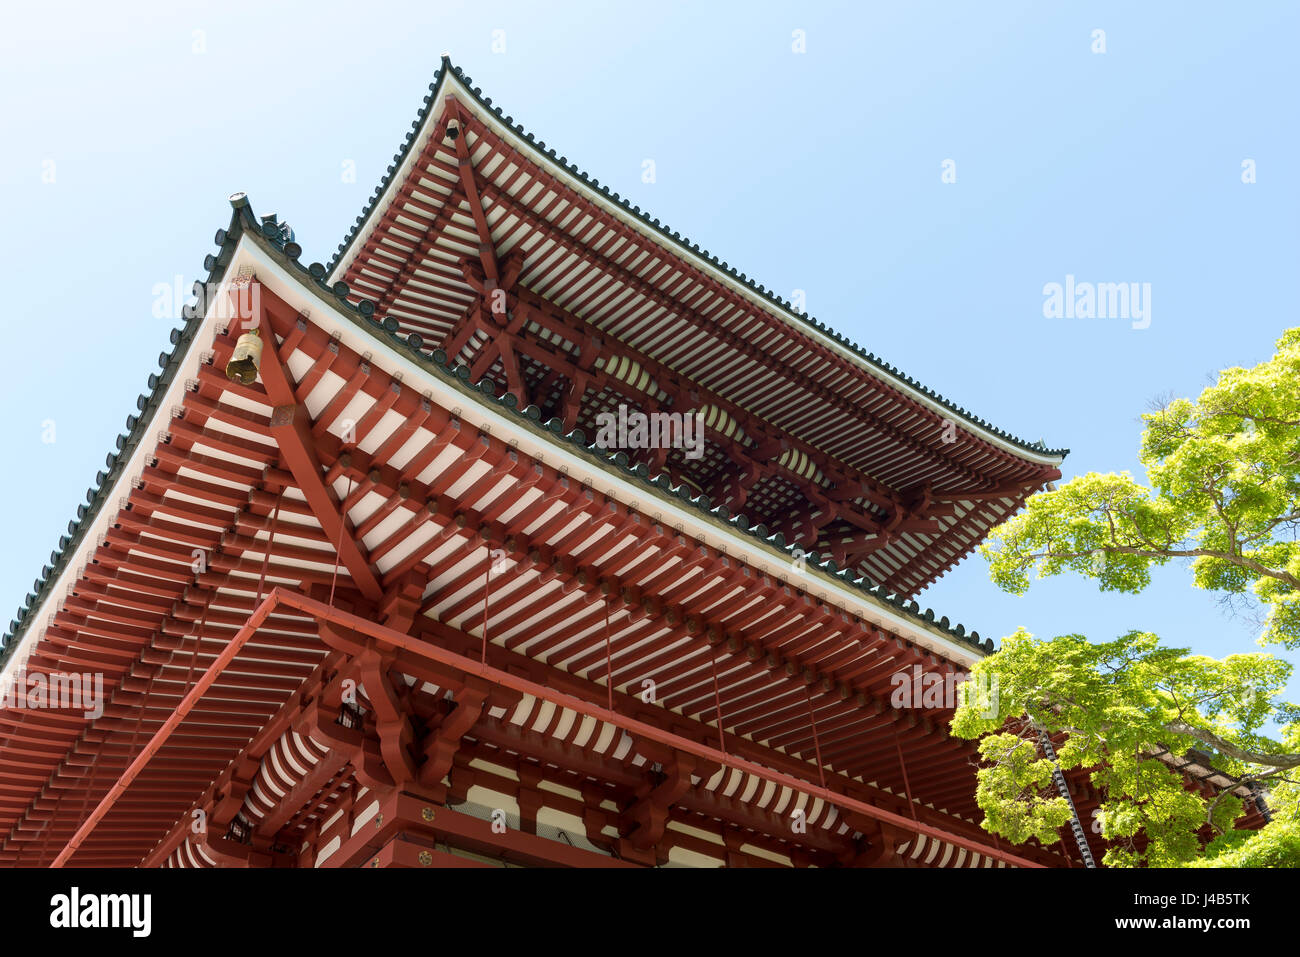 Grande Pagode de la paix à Naritasan Shinshoji temple de Narita, au Japon. Fait partie du Temple de la secte Shingon Chisan du bouddhisme Banque D'Images